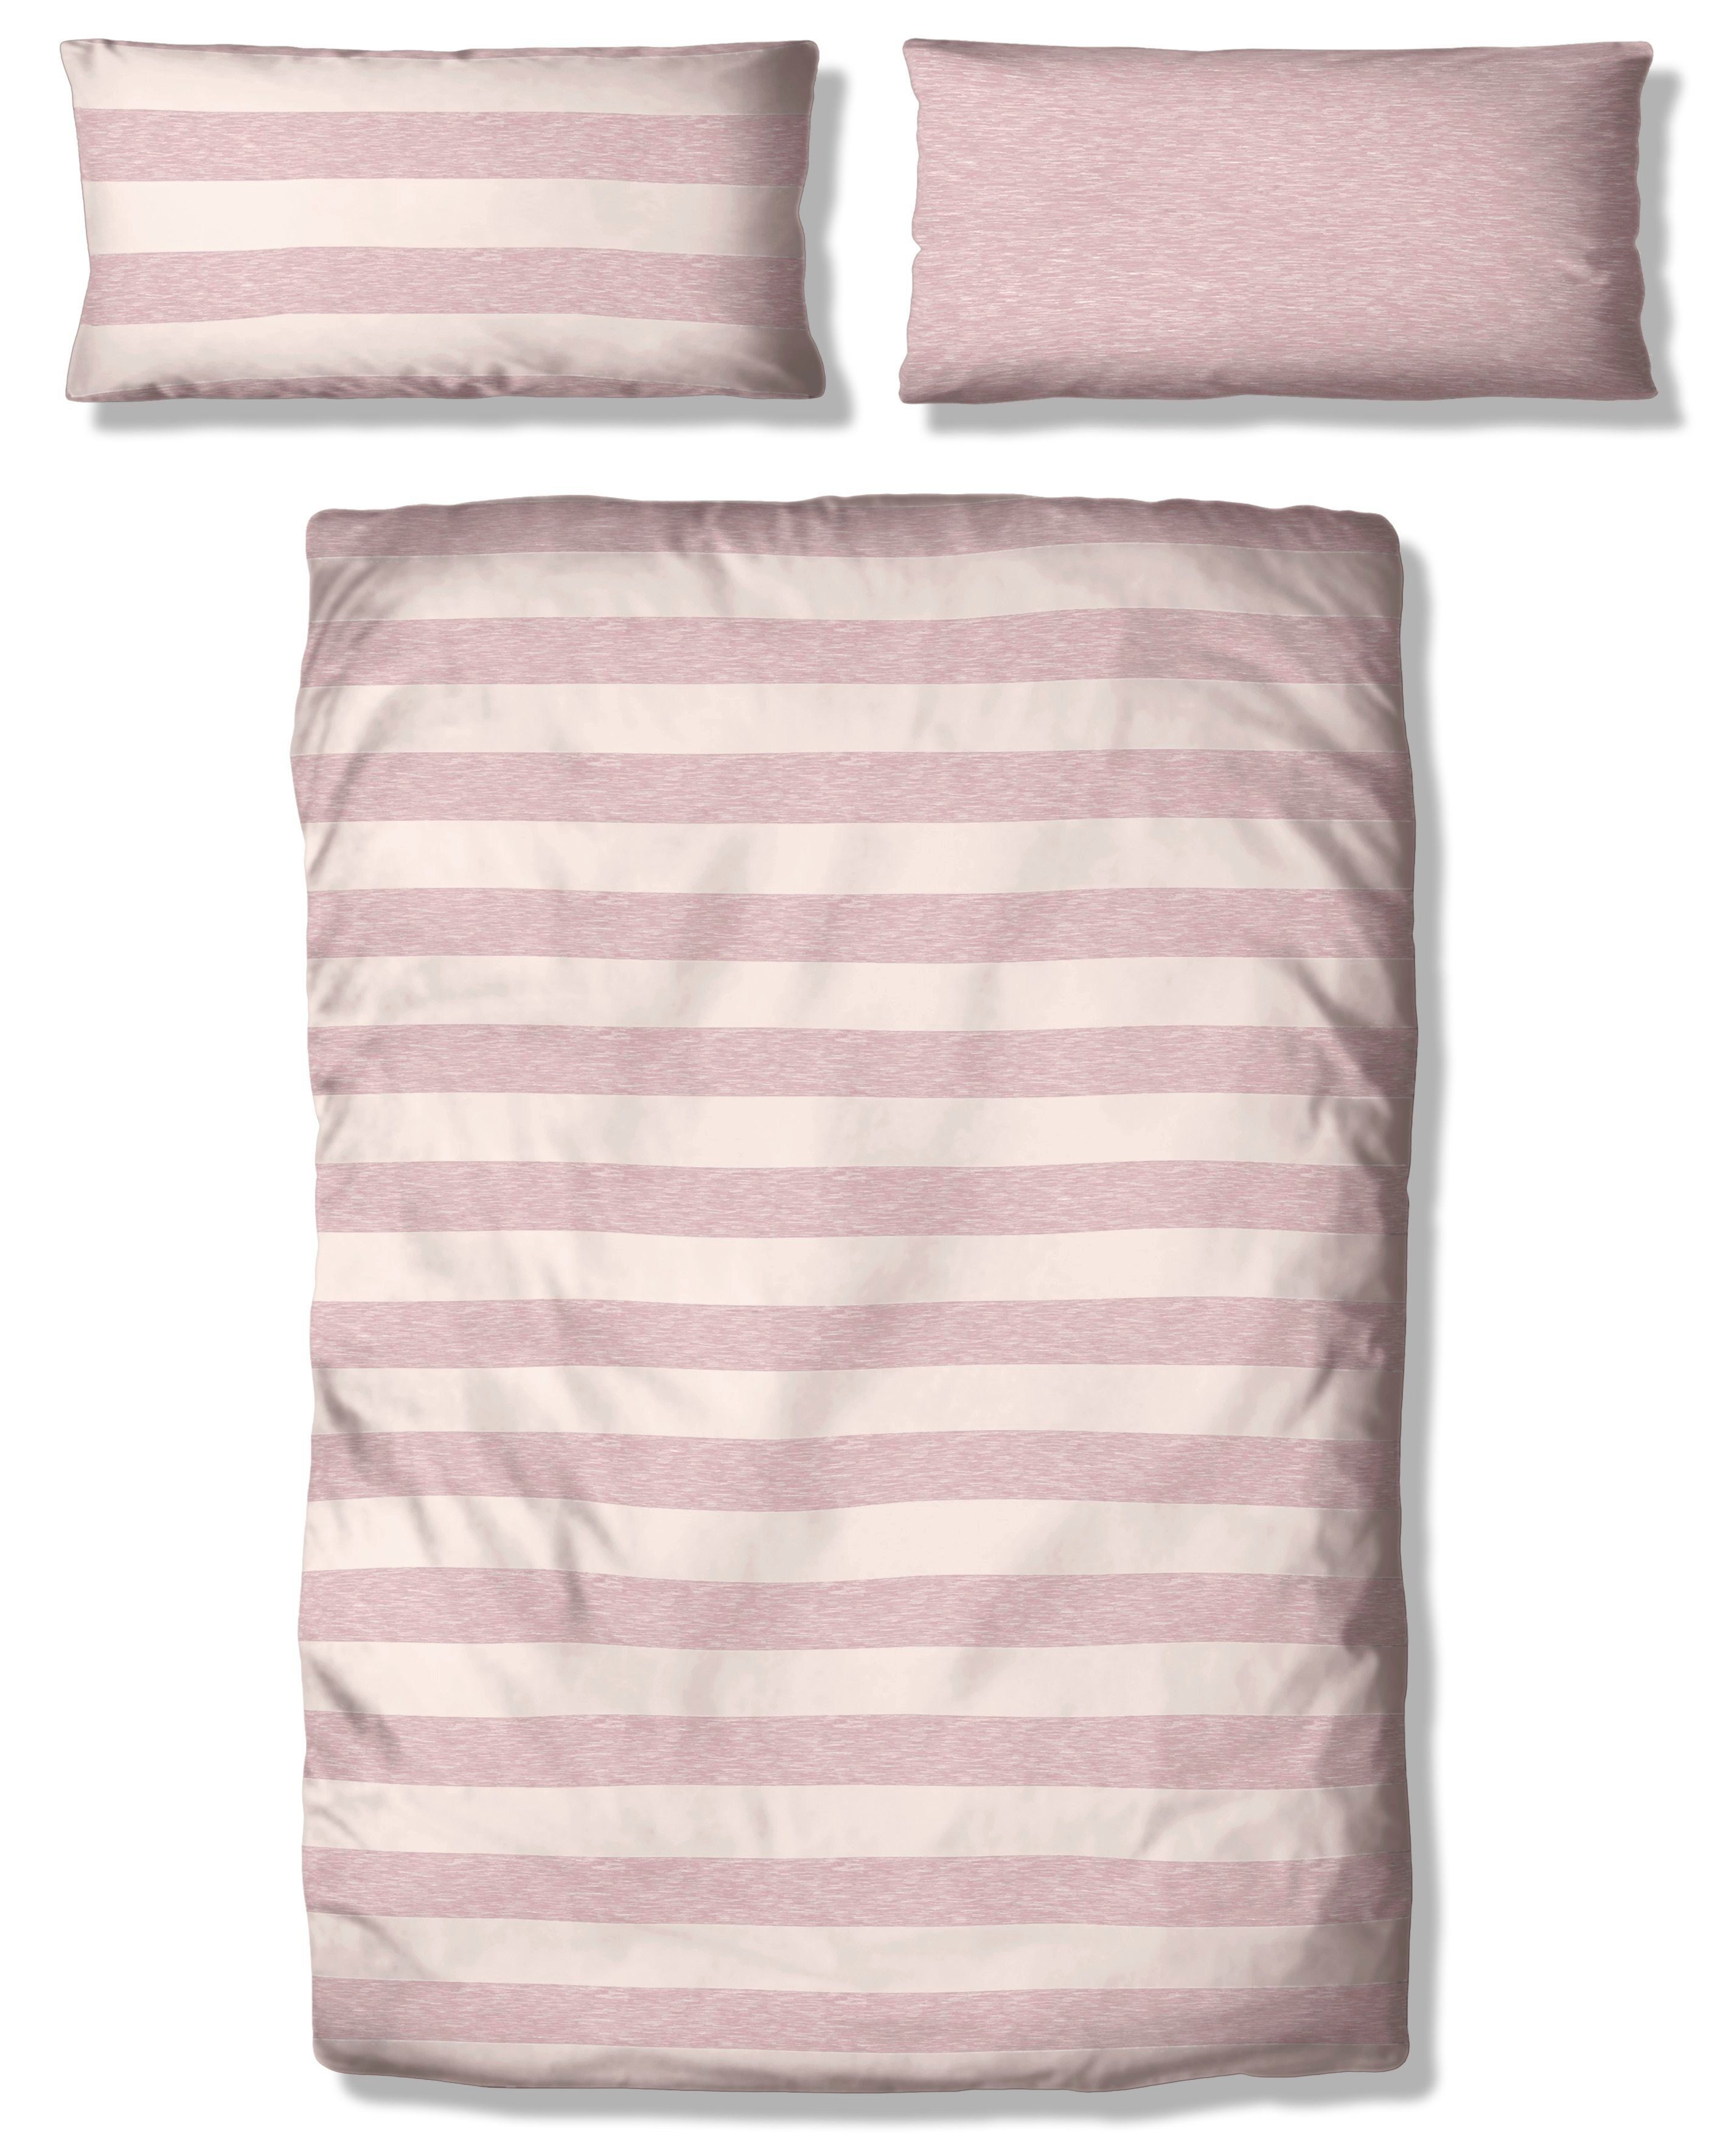 Stripe Big Wendebettwäsche 2 Bio-Baumwolle products, in Gr. OTTO Biber, zertifiziert, 135x200 100% cm, 155x220 rosa/weiß oder teilig, in Melange-Optik Streifen-Design GOTS